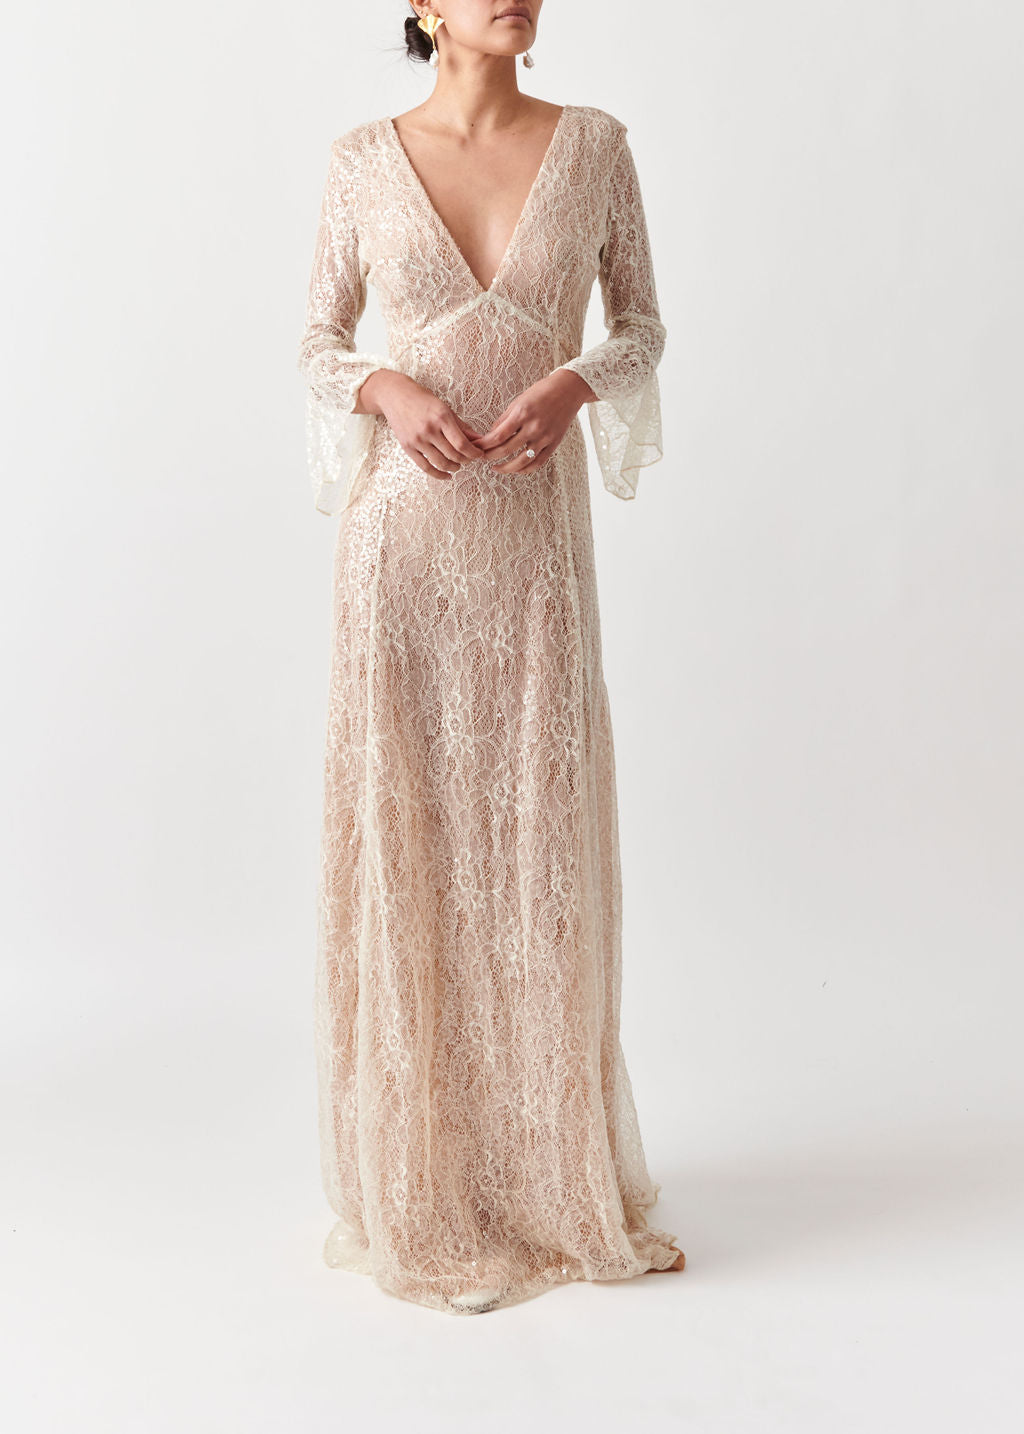 Model Wearing Astrea Lace Wedding Dress